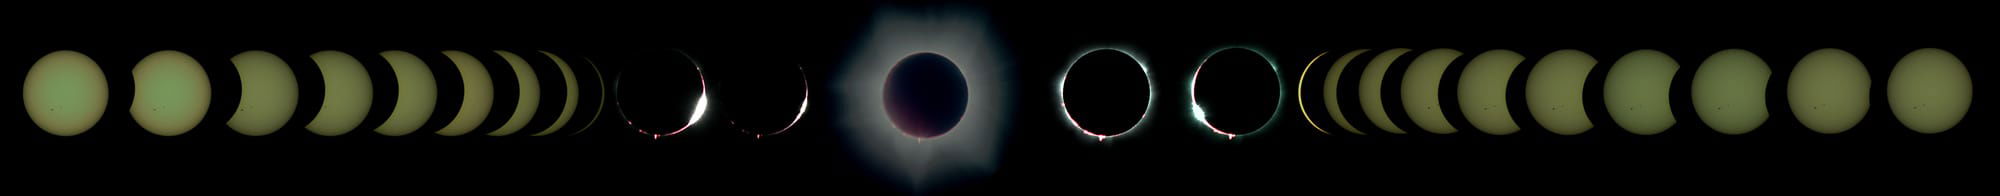 Eclipse totale du 20 avril 2023 - crédit Pierre Thierry